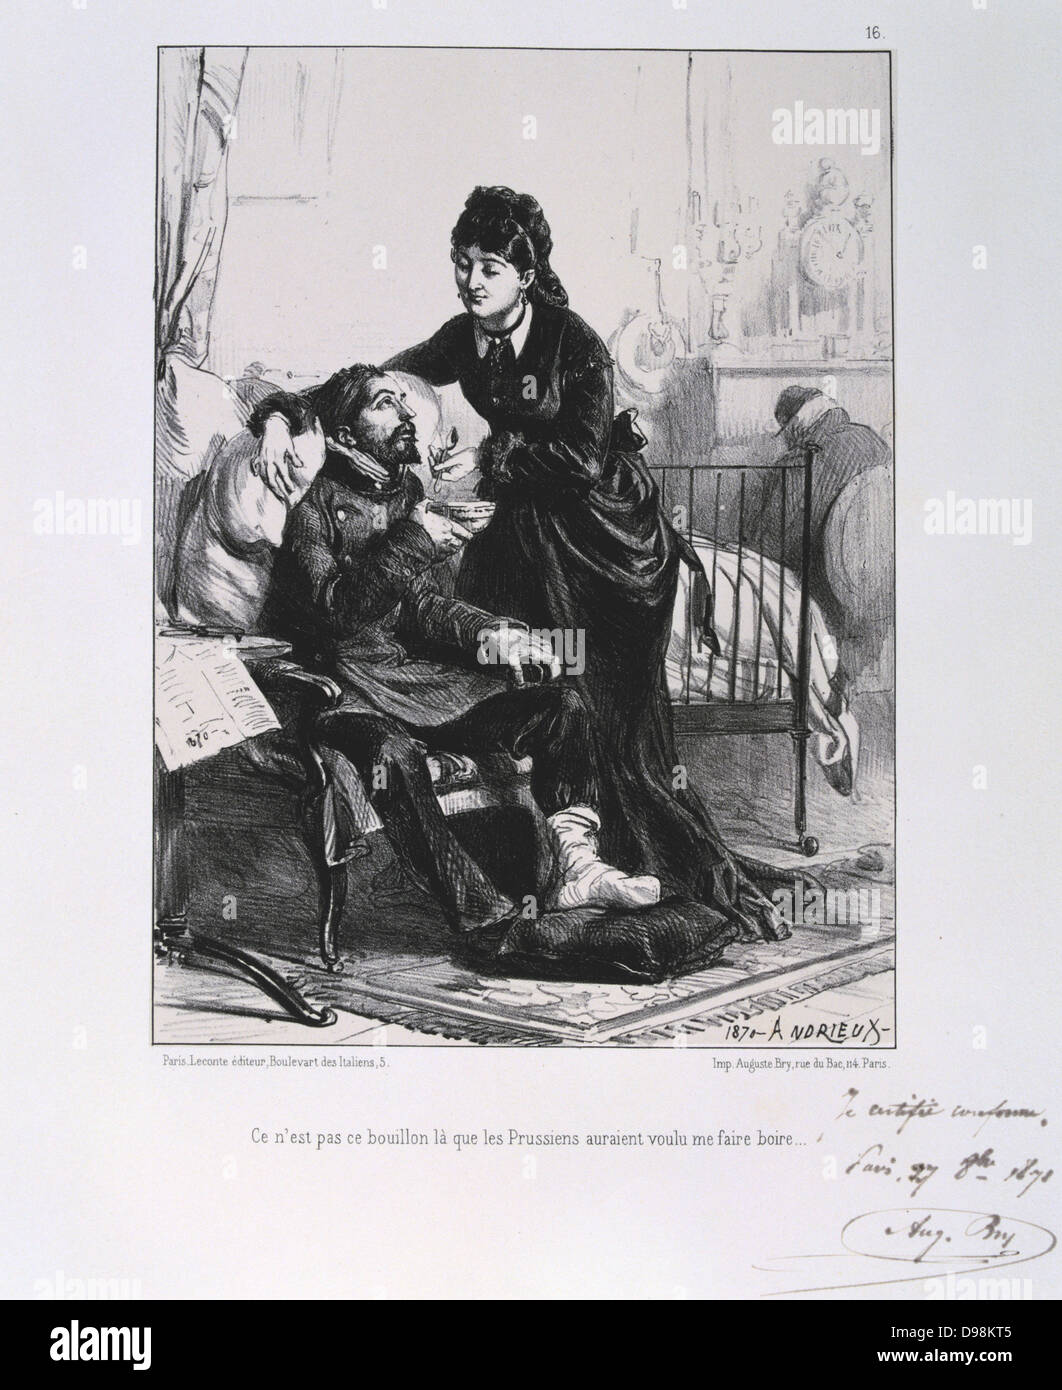 Guerre franco-prussienne de 1870-1871 : un soldat blessé est soigné et nourri. À partir d'une série de lithographies de Clement Août Andrieux sur les Gardes Nationales. Banque D'Images